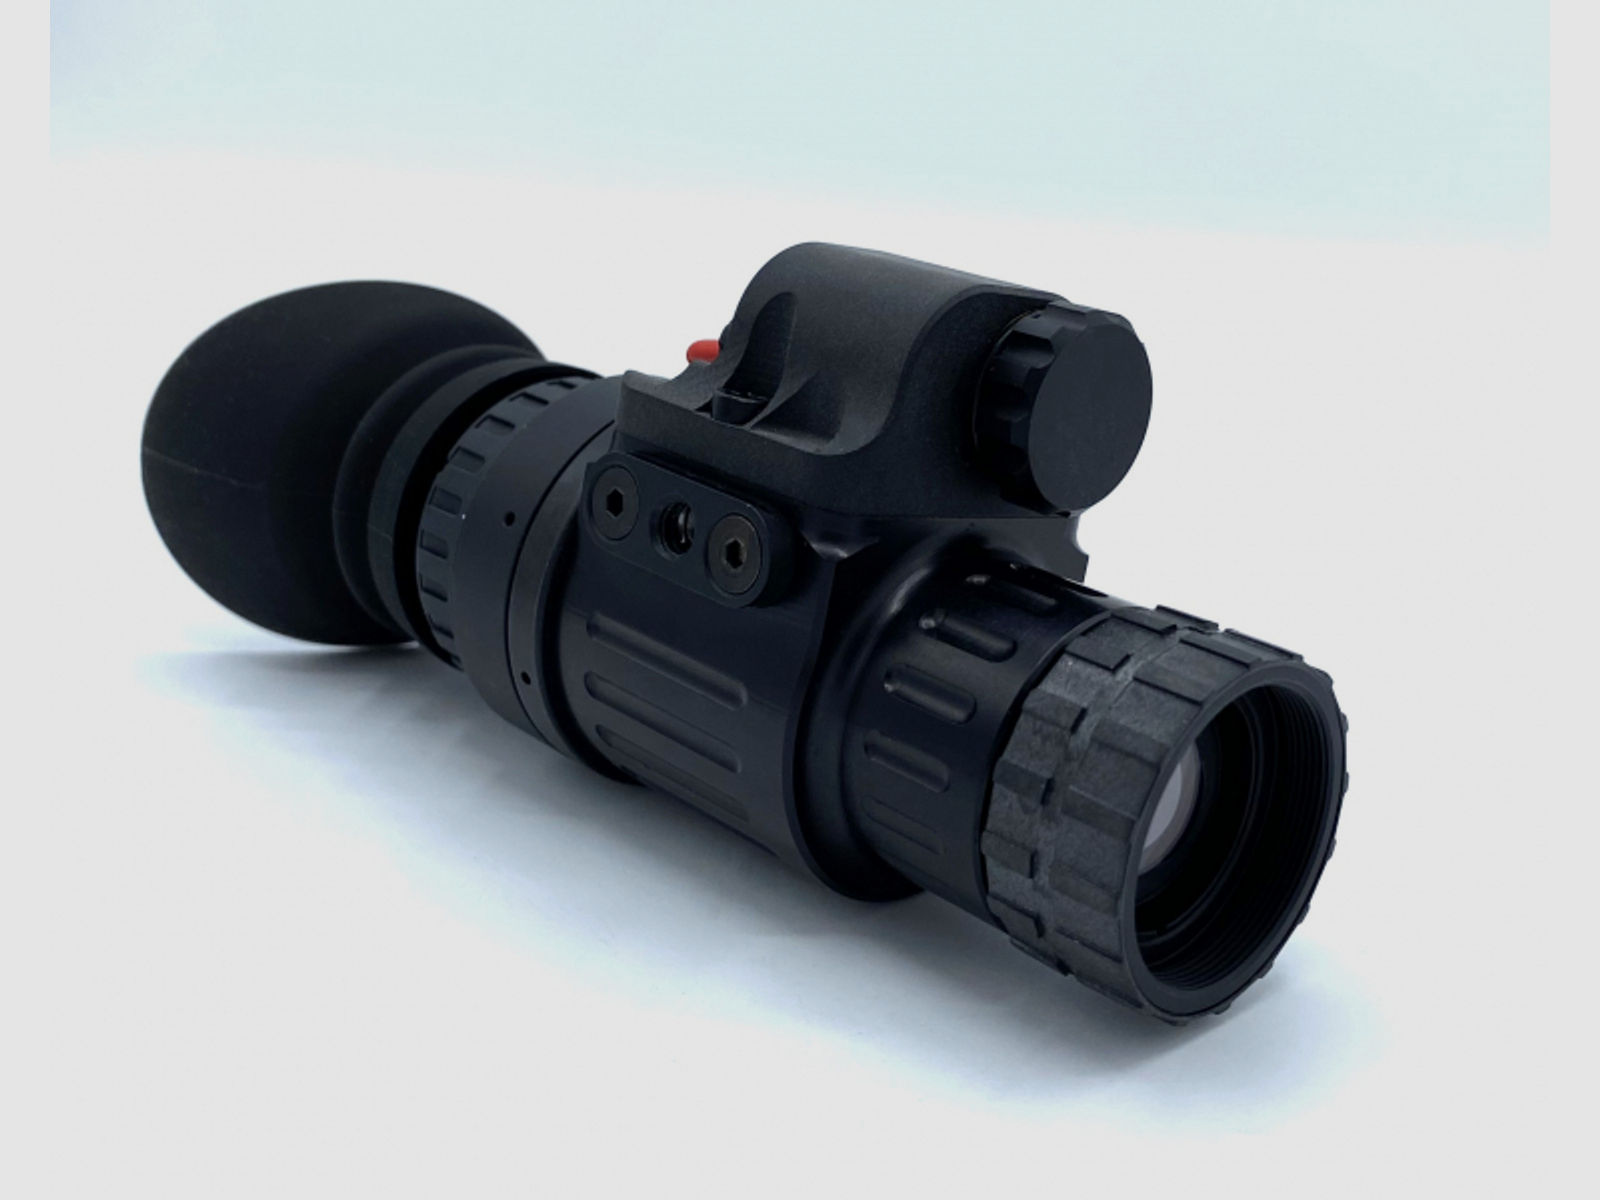 Nightspotter Nachtsichtgerät LUX-14, Photonis, green Gen 2+, für Jäger, Outdoor, Security